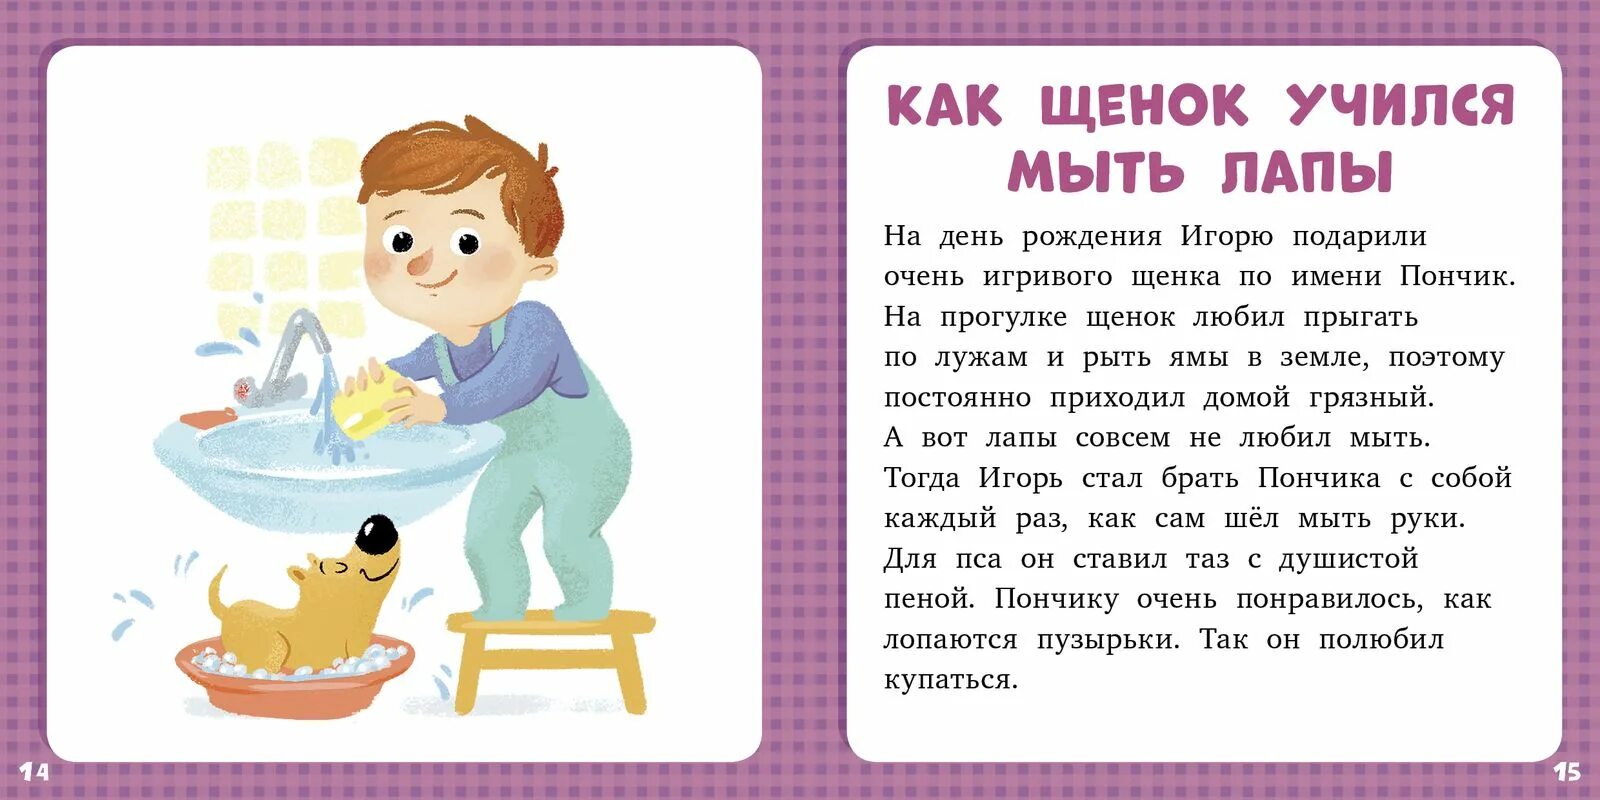 Покажи краткие рассказы. Лида Данилова 17 историй и сказок для первого чтения. Короткие рассказы для дошкольников. Детские рассказы короткие. Короткие рассказыдя детей.